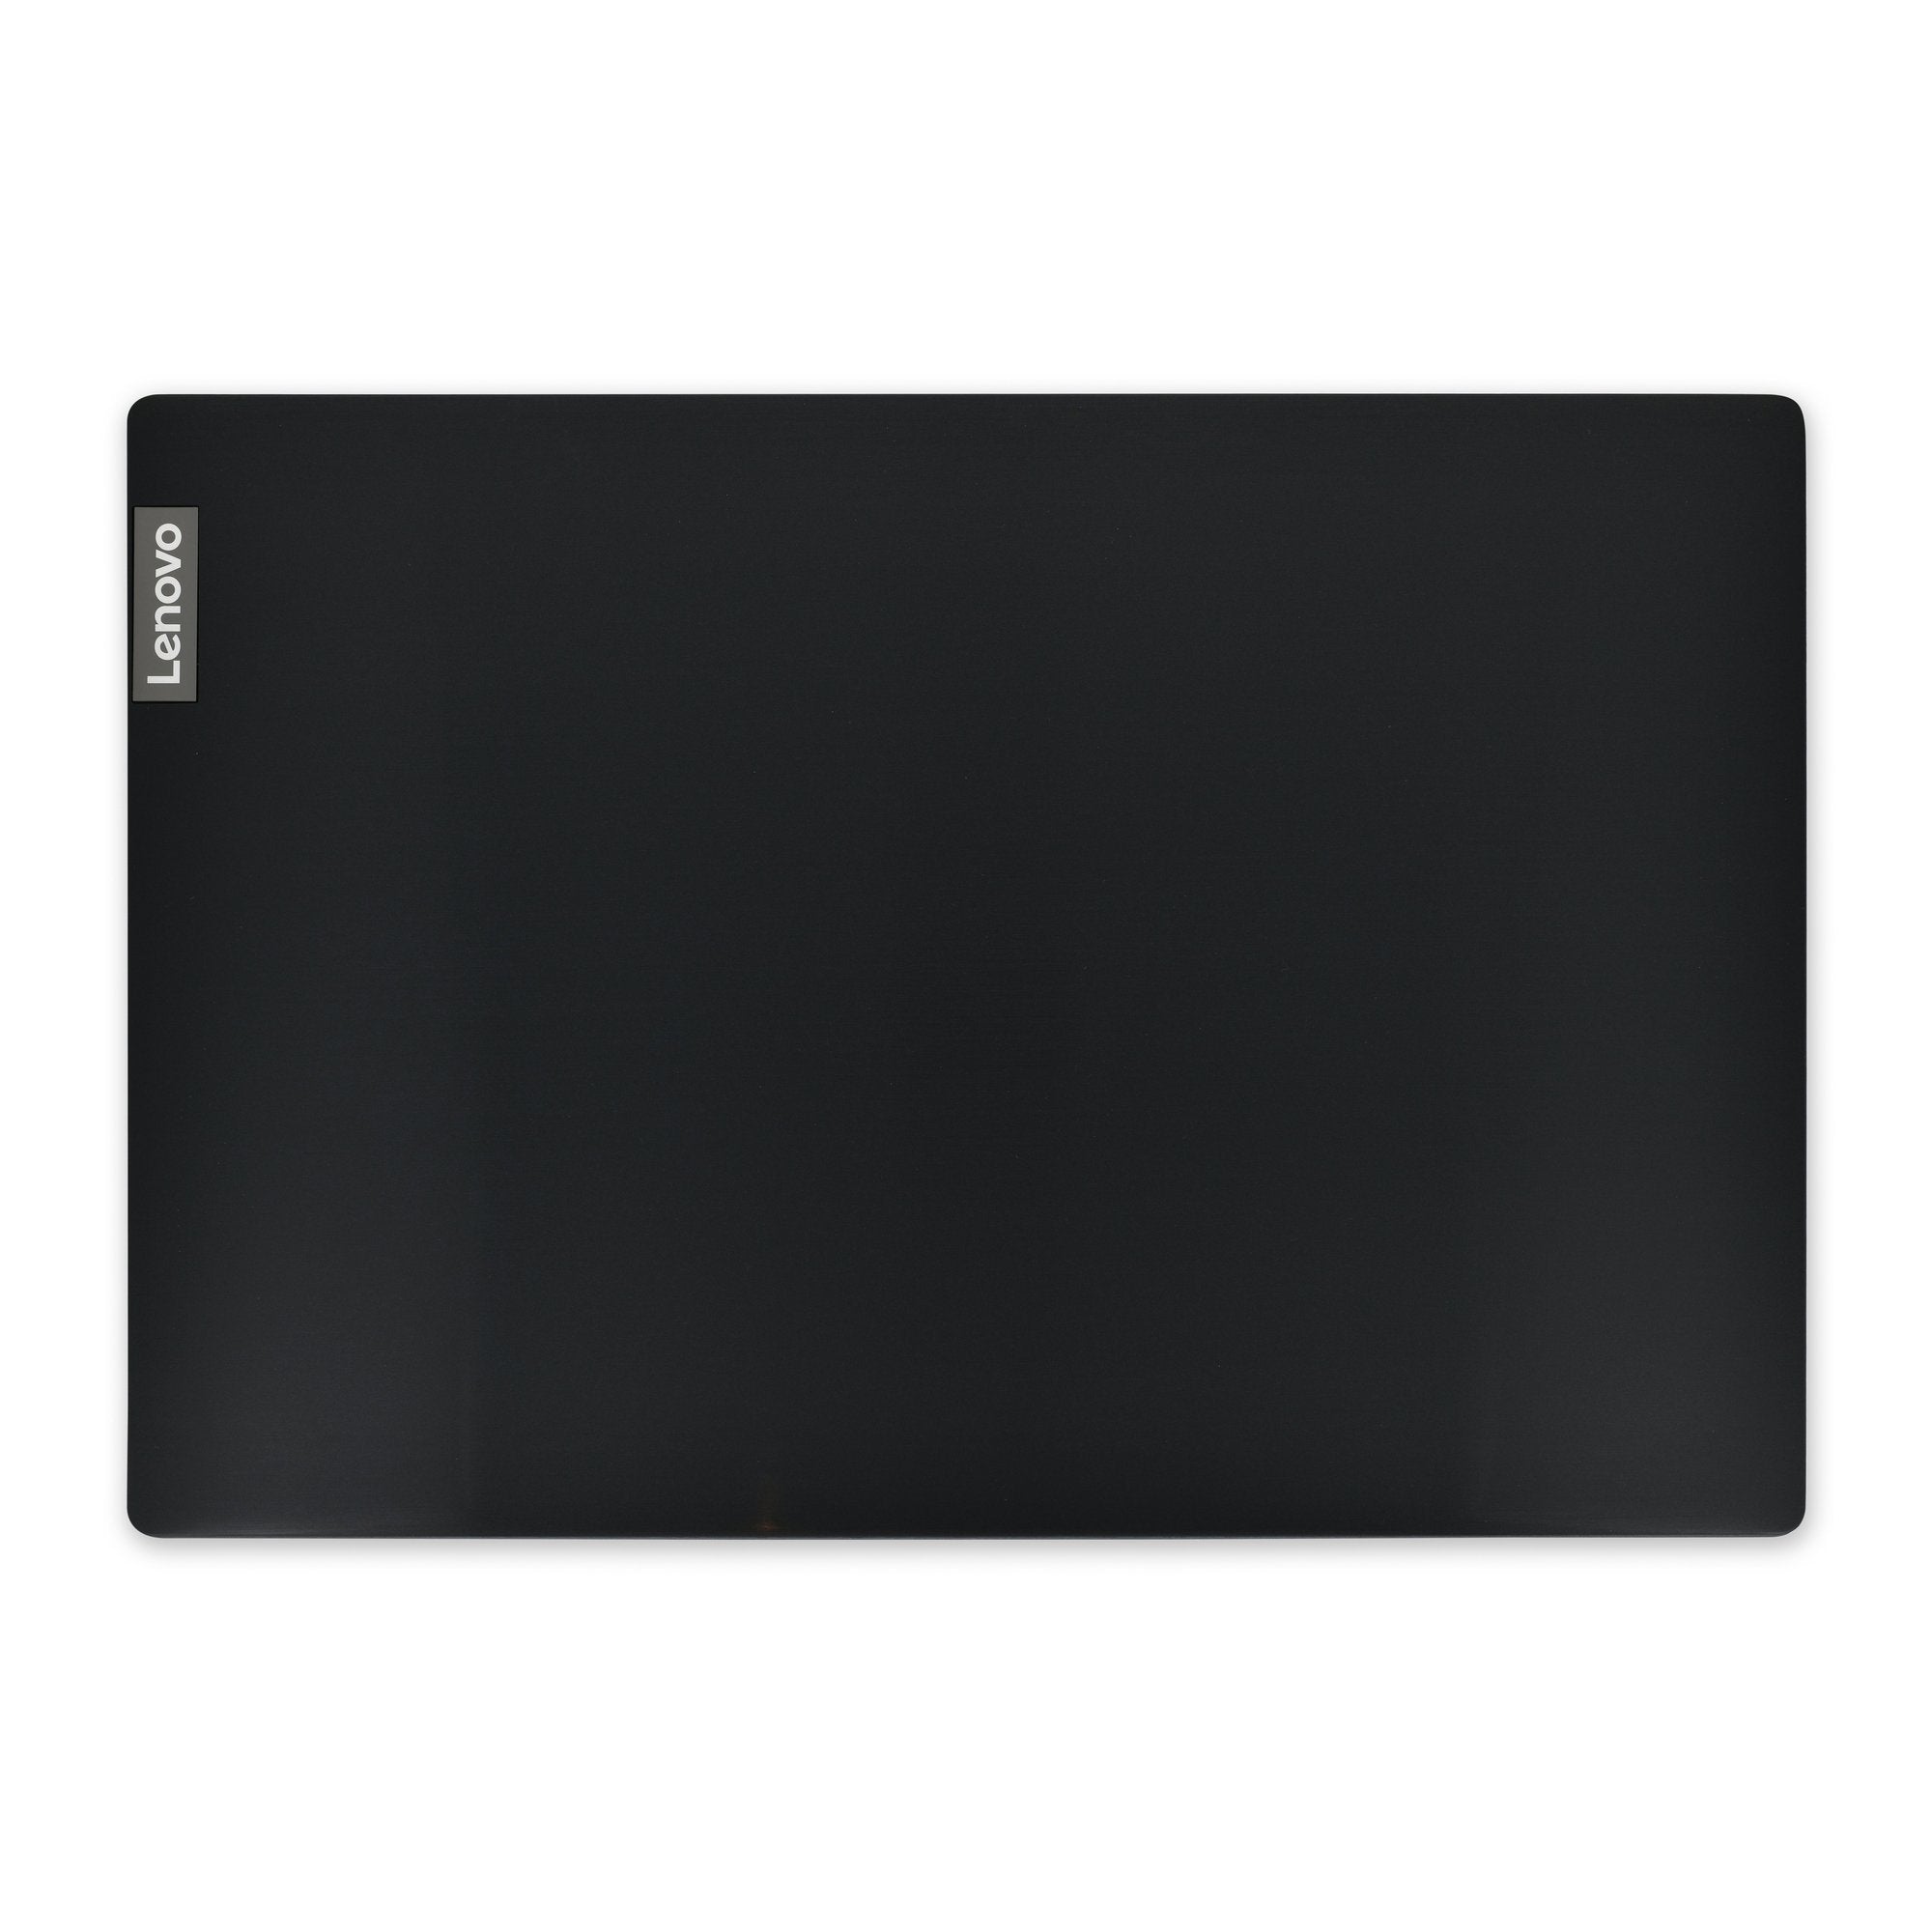 Lenovo IdeaPad S145 and ThinkPad S145 LCD Back Cover Glossy Black New